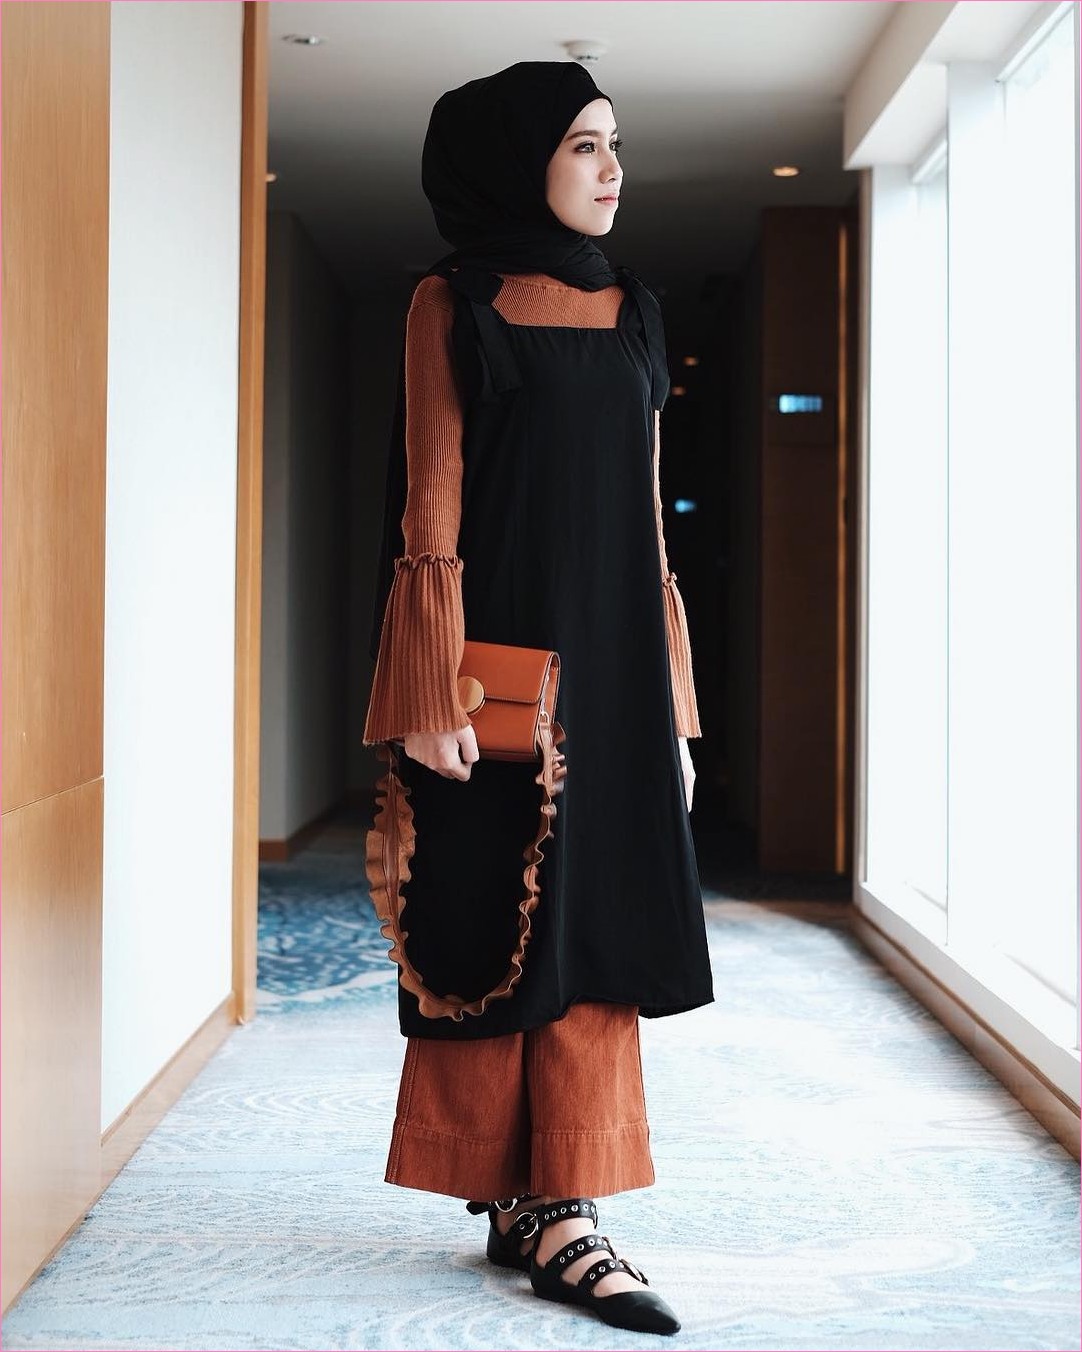  Tampil serba casual dan tetap menarik di hari lebaran tentunya keinginan banyak orang termas ∝ 54 Model Baju Muslim Remaja Outfit Berhijab Ala Selebgram 2018